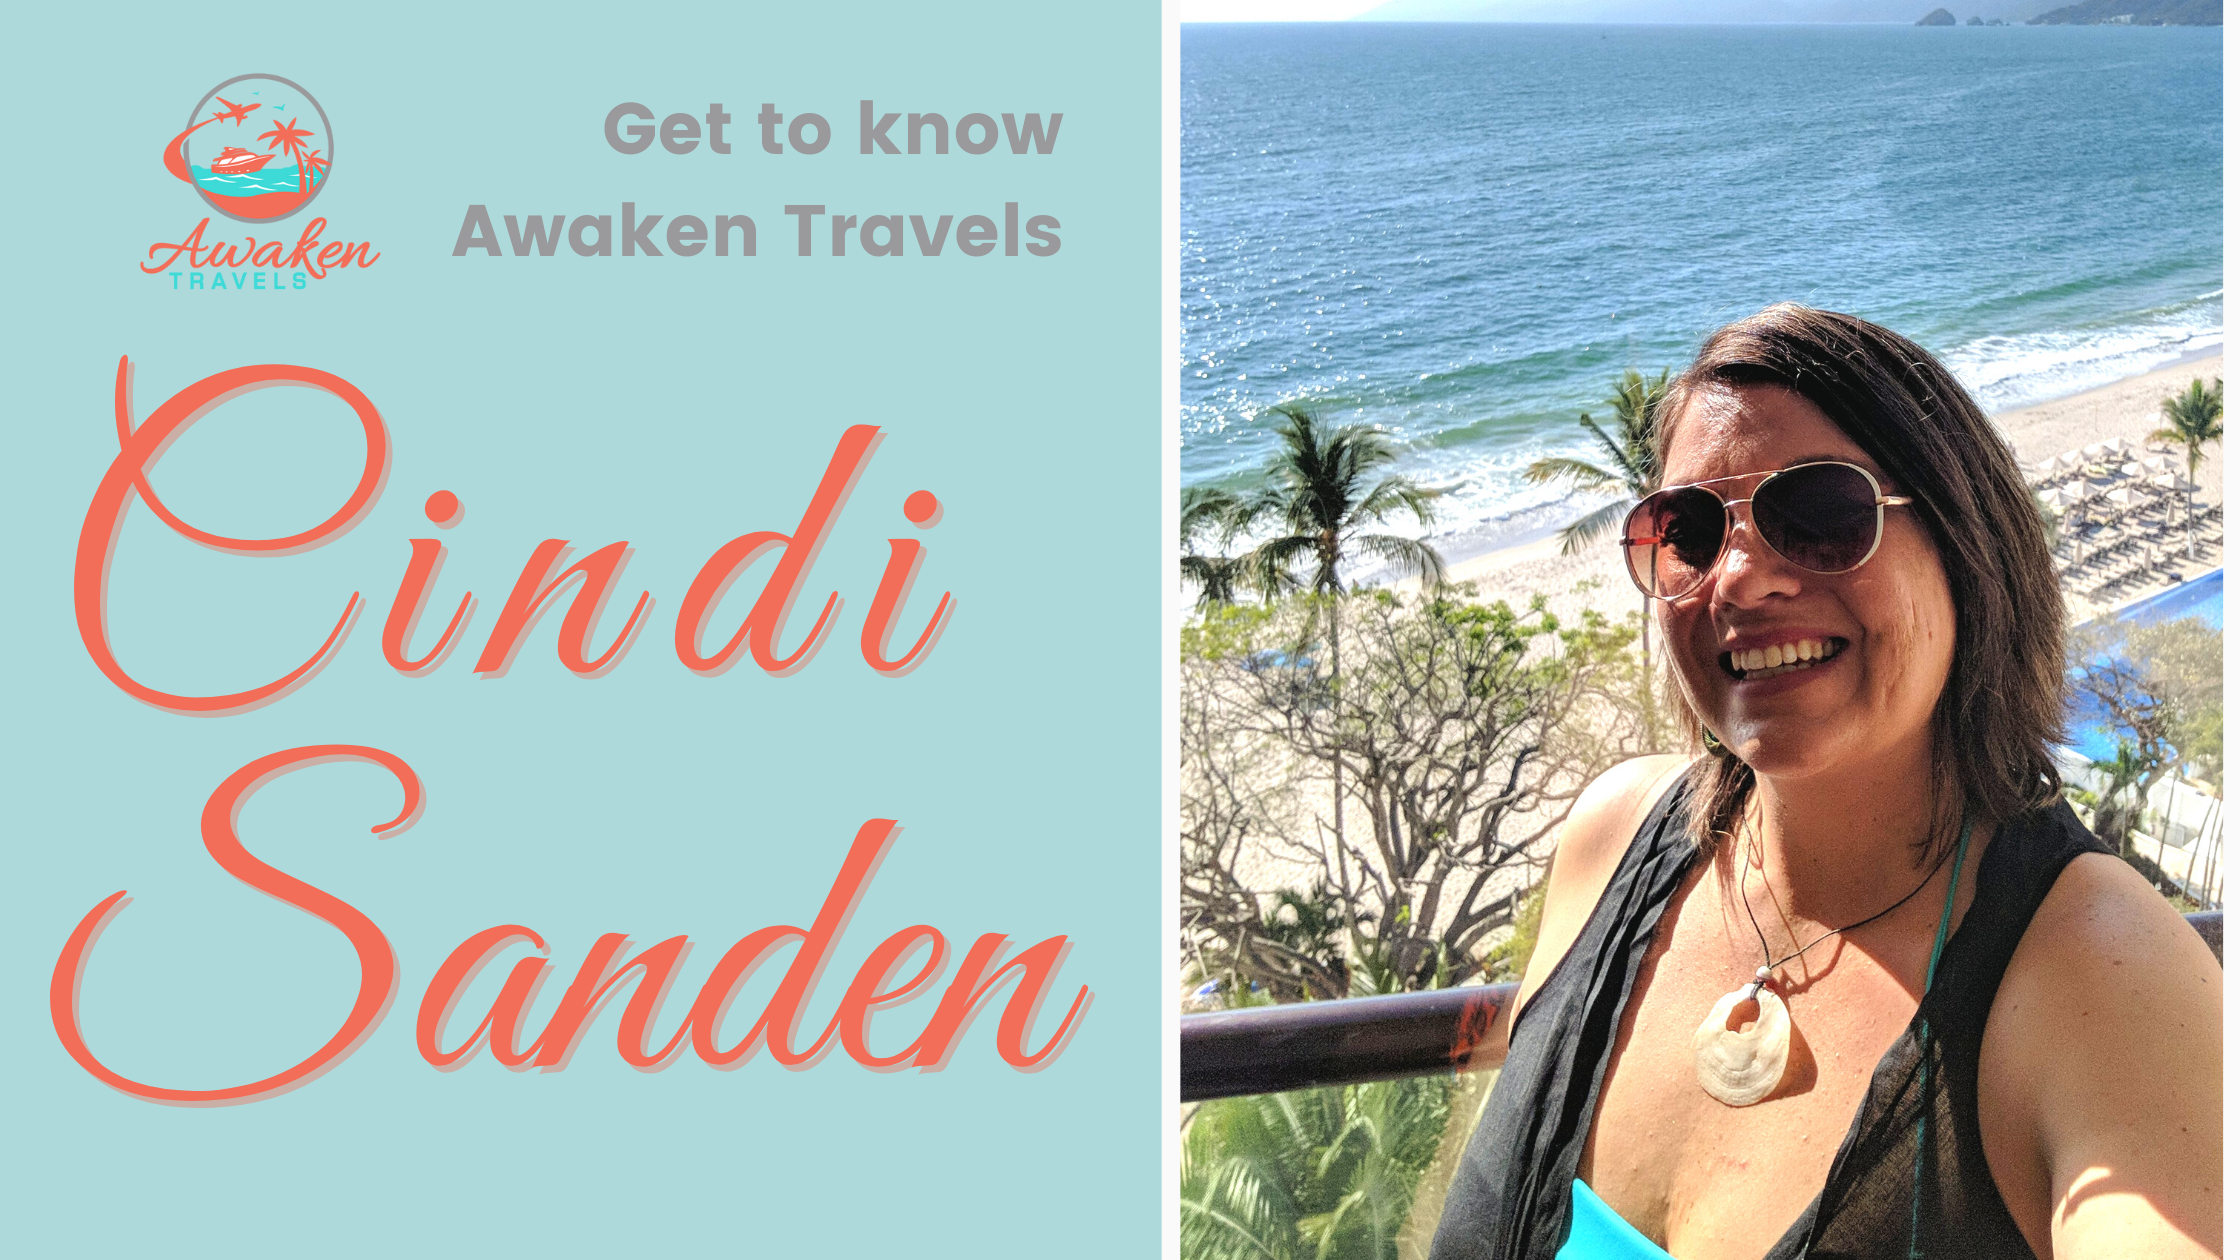 Get to know Awaken Travels agent: Owner Cindi Sanden